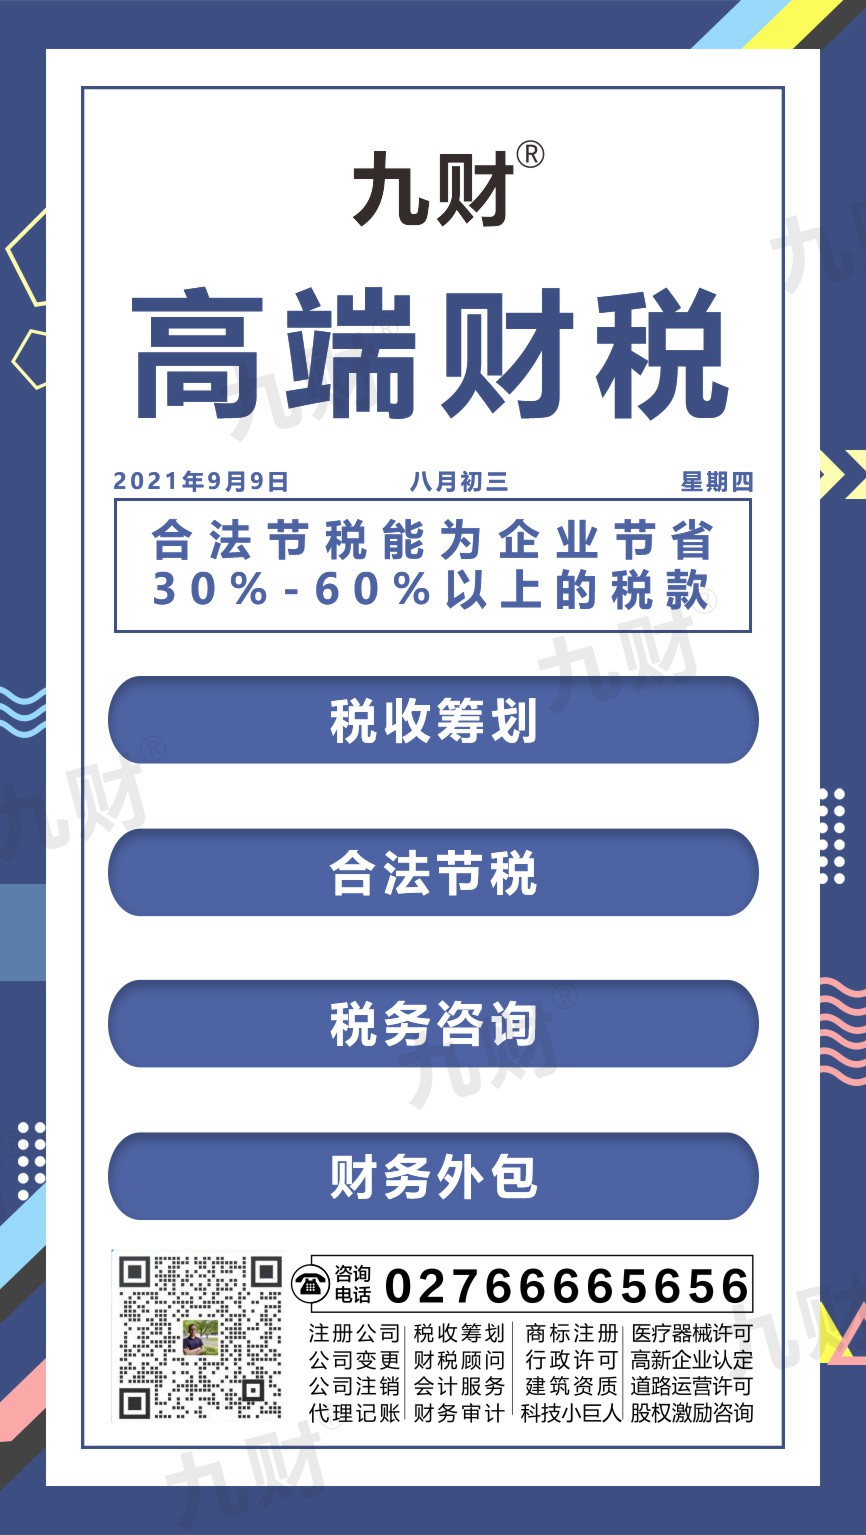 江岸区武汉东湖区股东变更网上如何填写资料申请